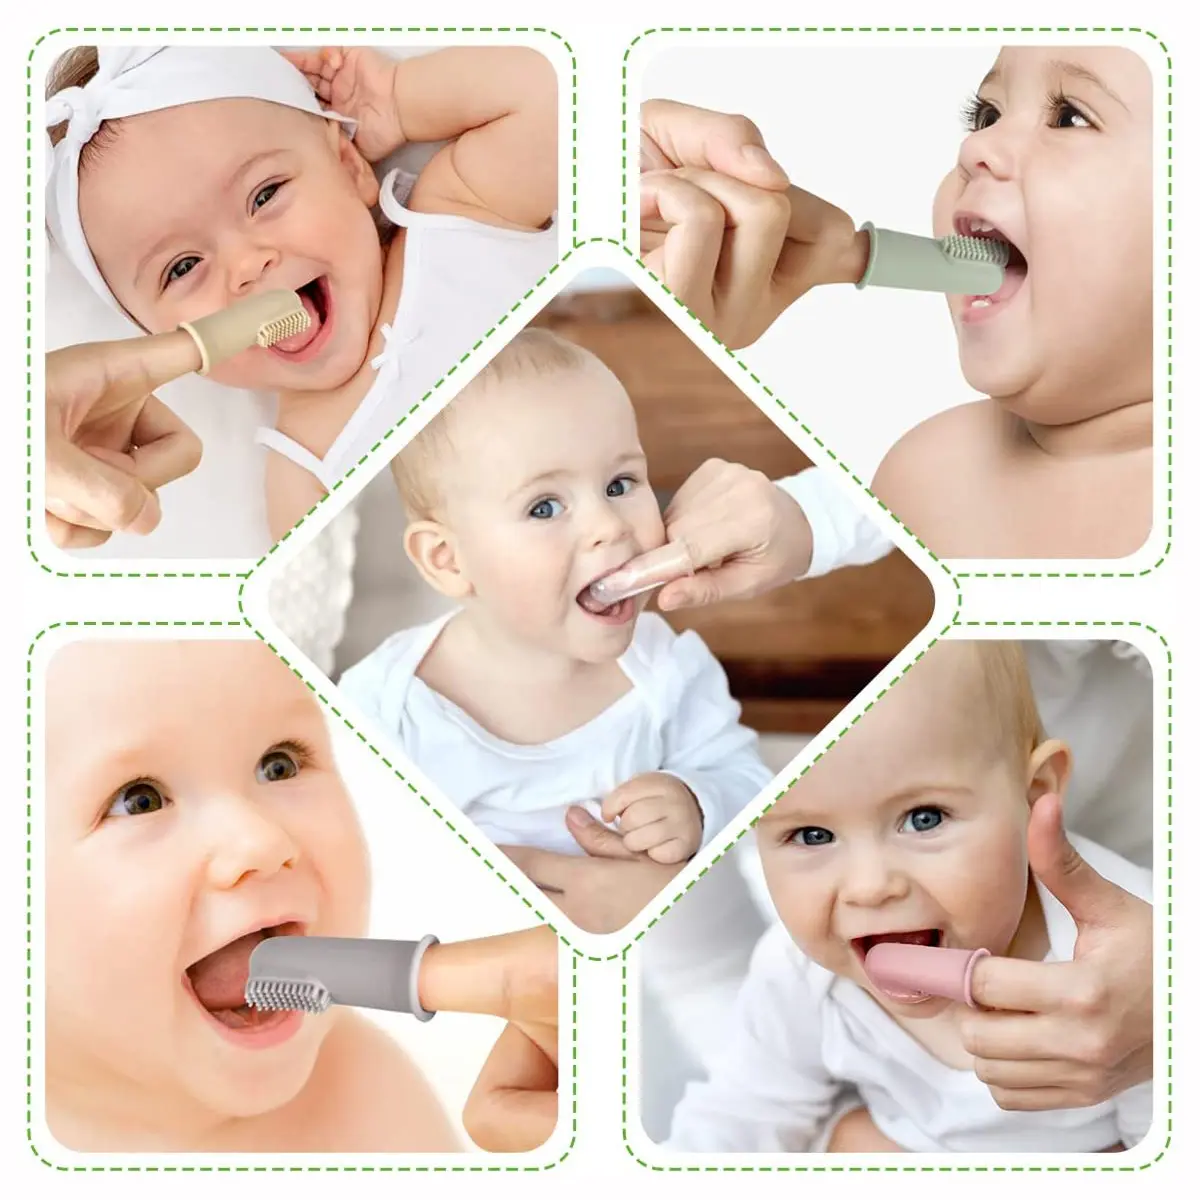 Baby Toothbrush Crianças 360 Graus Soft Finger Criança Toothbrush Dentes Escova Silicone Crianças Dentes Limpeza Oral Care